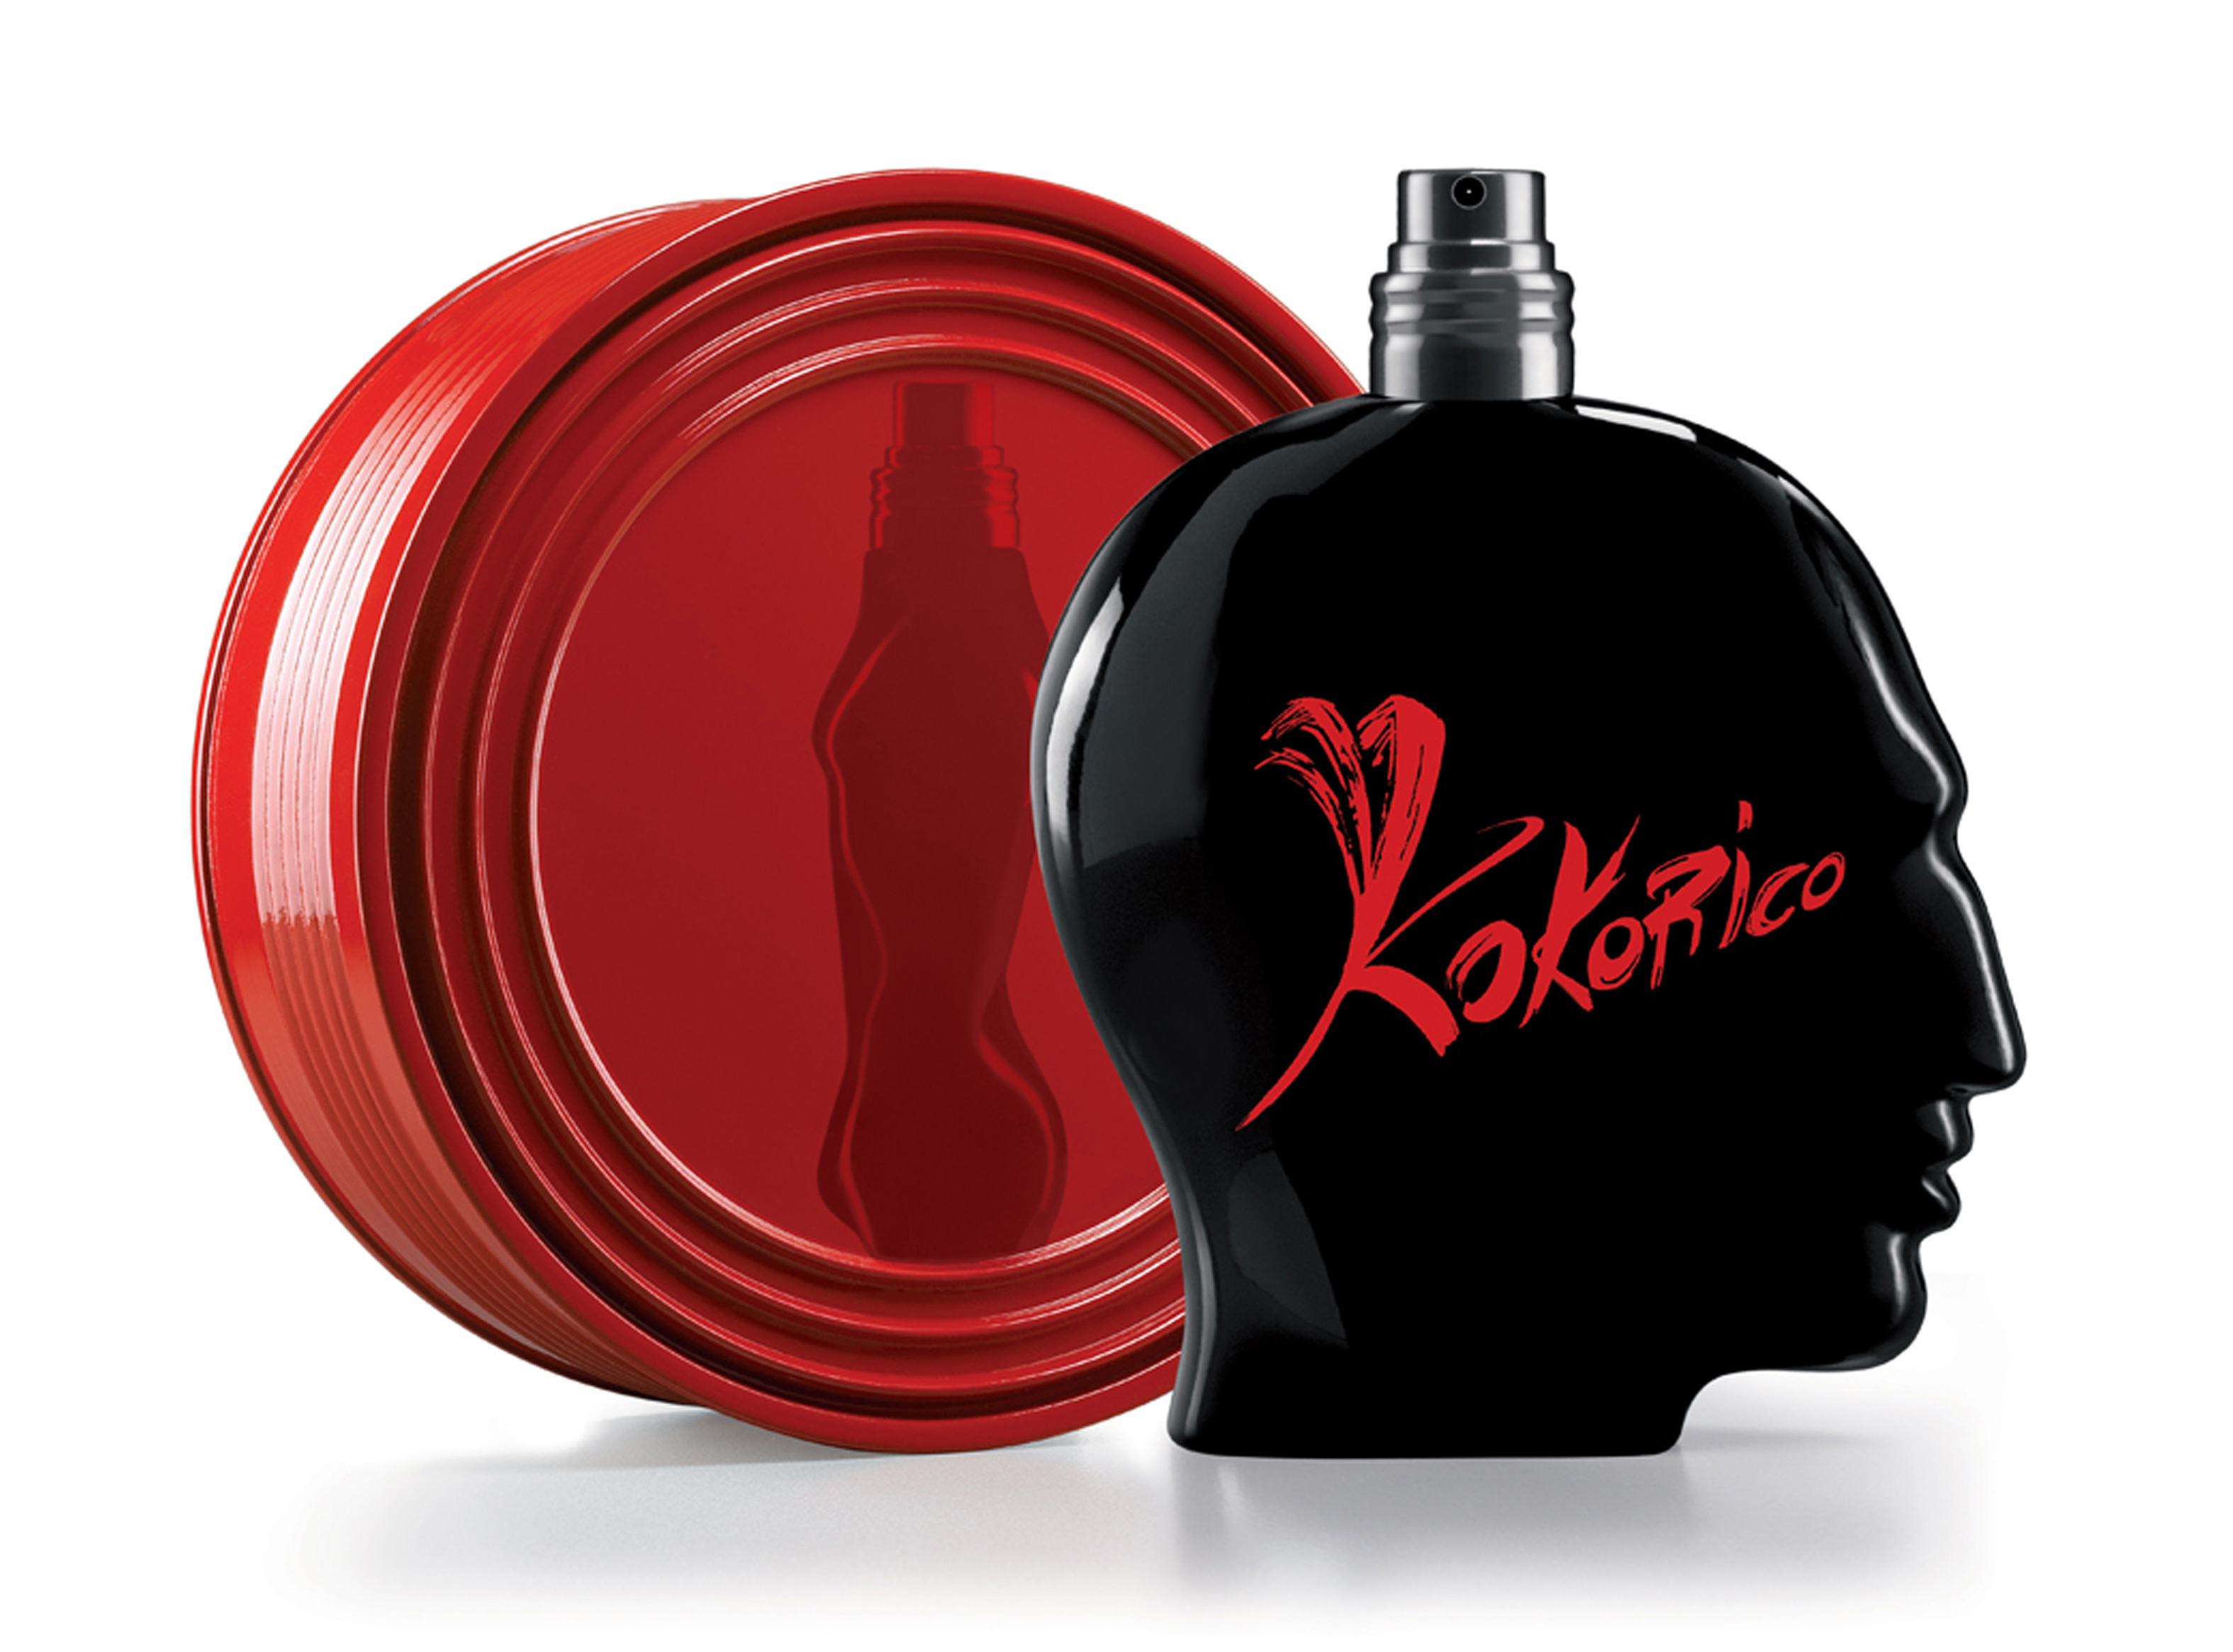 Nuevo concurso VLC: ¡Regalamos Kokorico, el perfume de Jean Paul Gaultier!